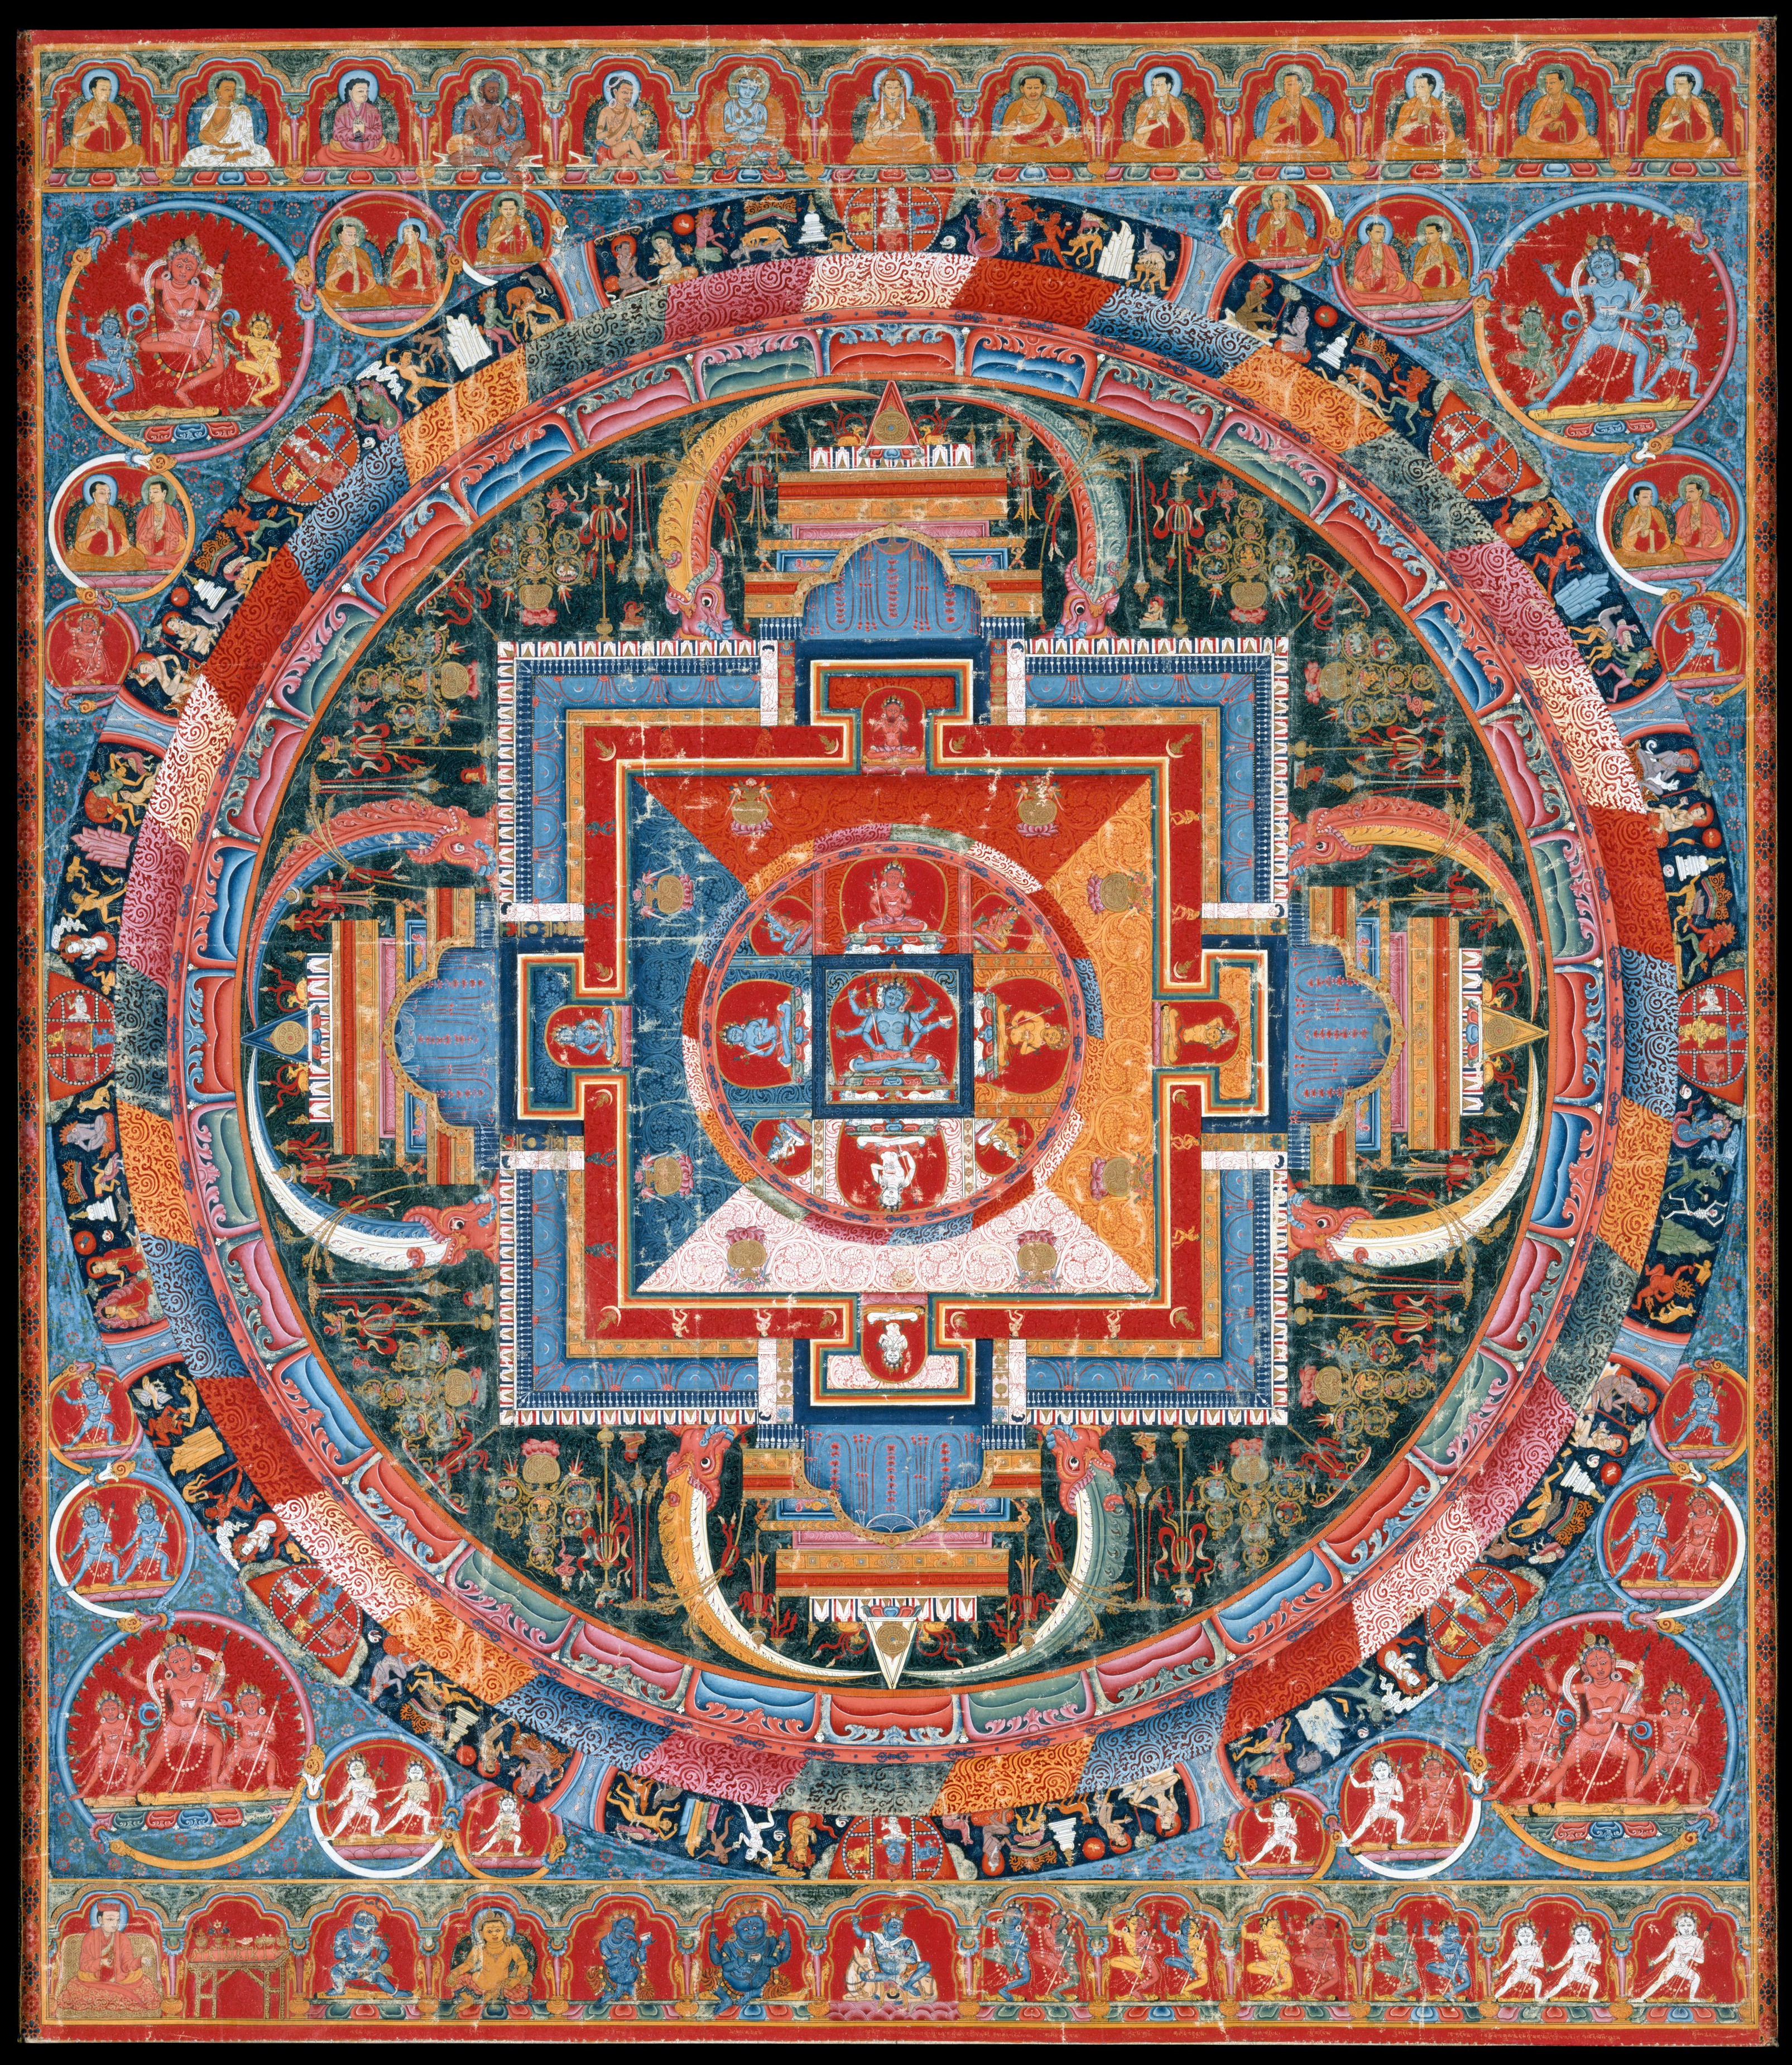 Mandala de Jnanadakini by Artista anónimo  - Finales del siglo XIV - 74,9 x 83,8 cm Colección privada